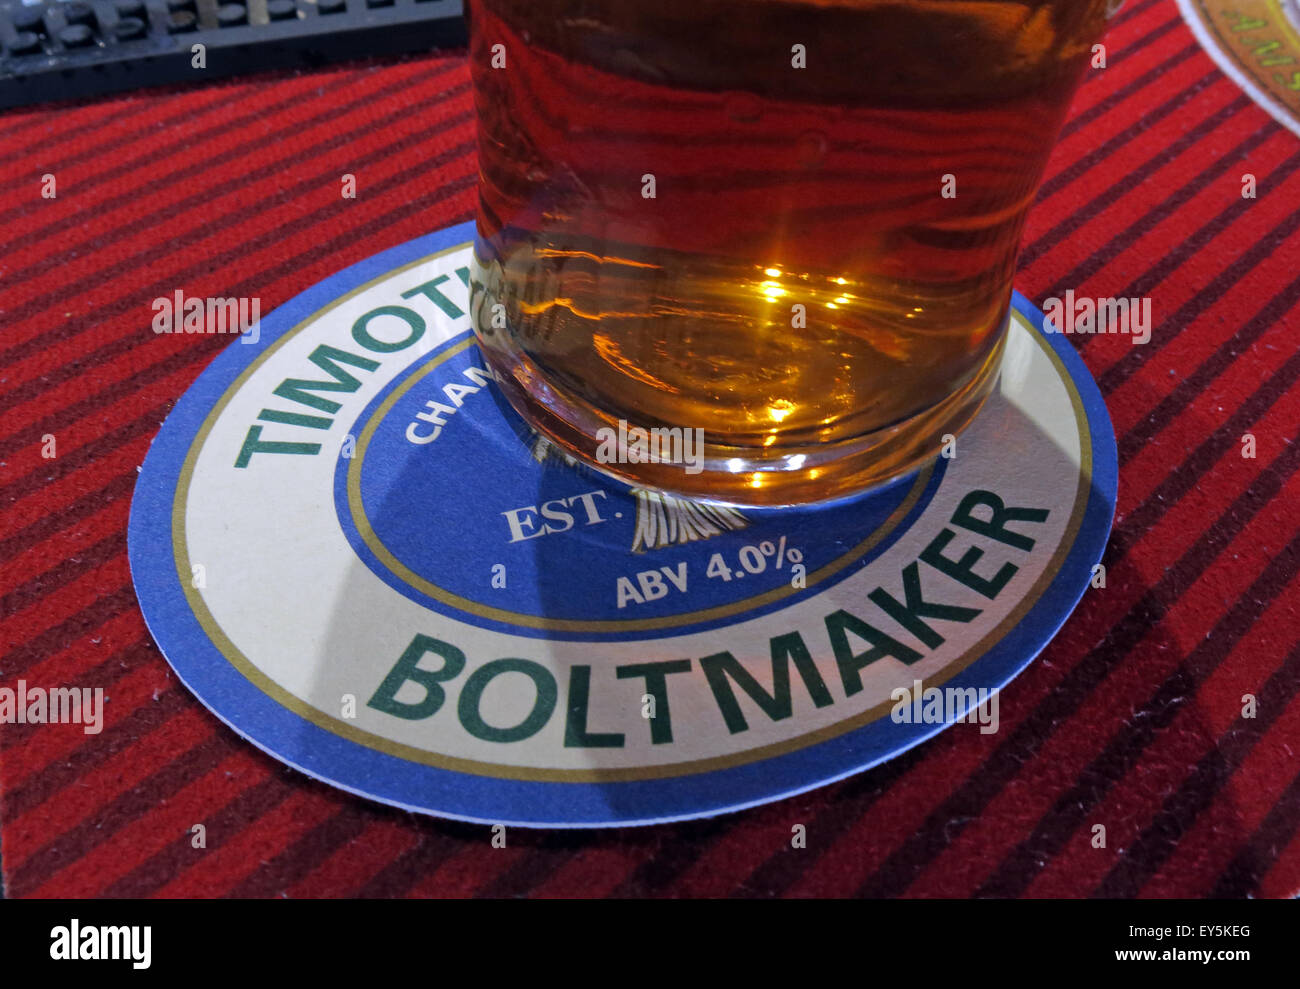 Une pinte de Timothy Taylor Boltmaker Amer, dans un bar, Yorkshire, Angleterre, Royaume-Uni sur une beermat Banque D'Images